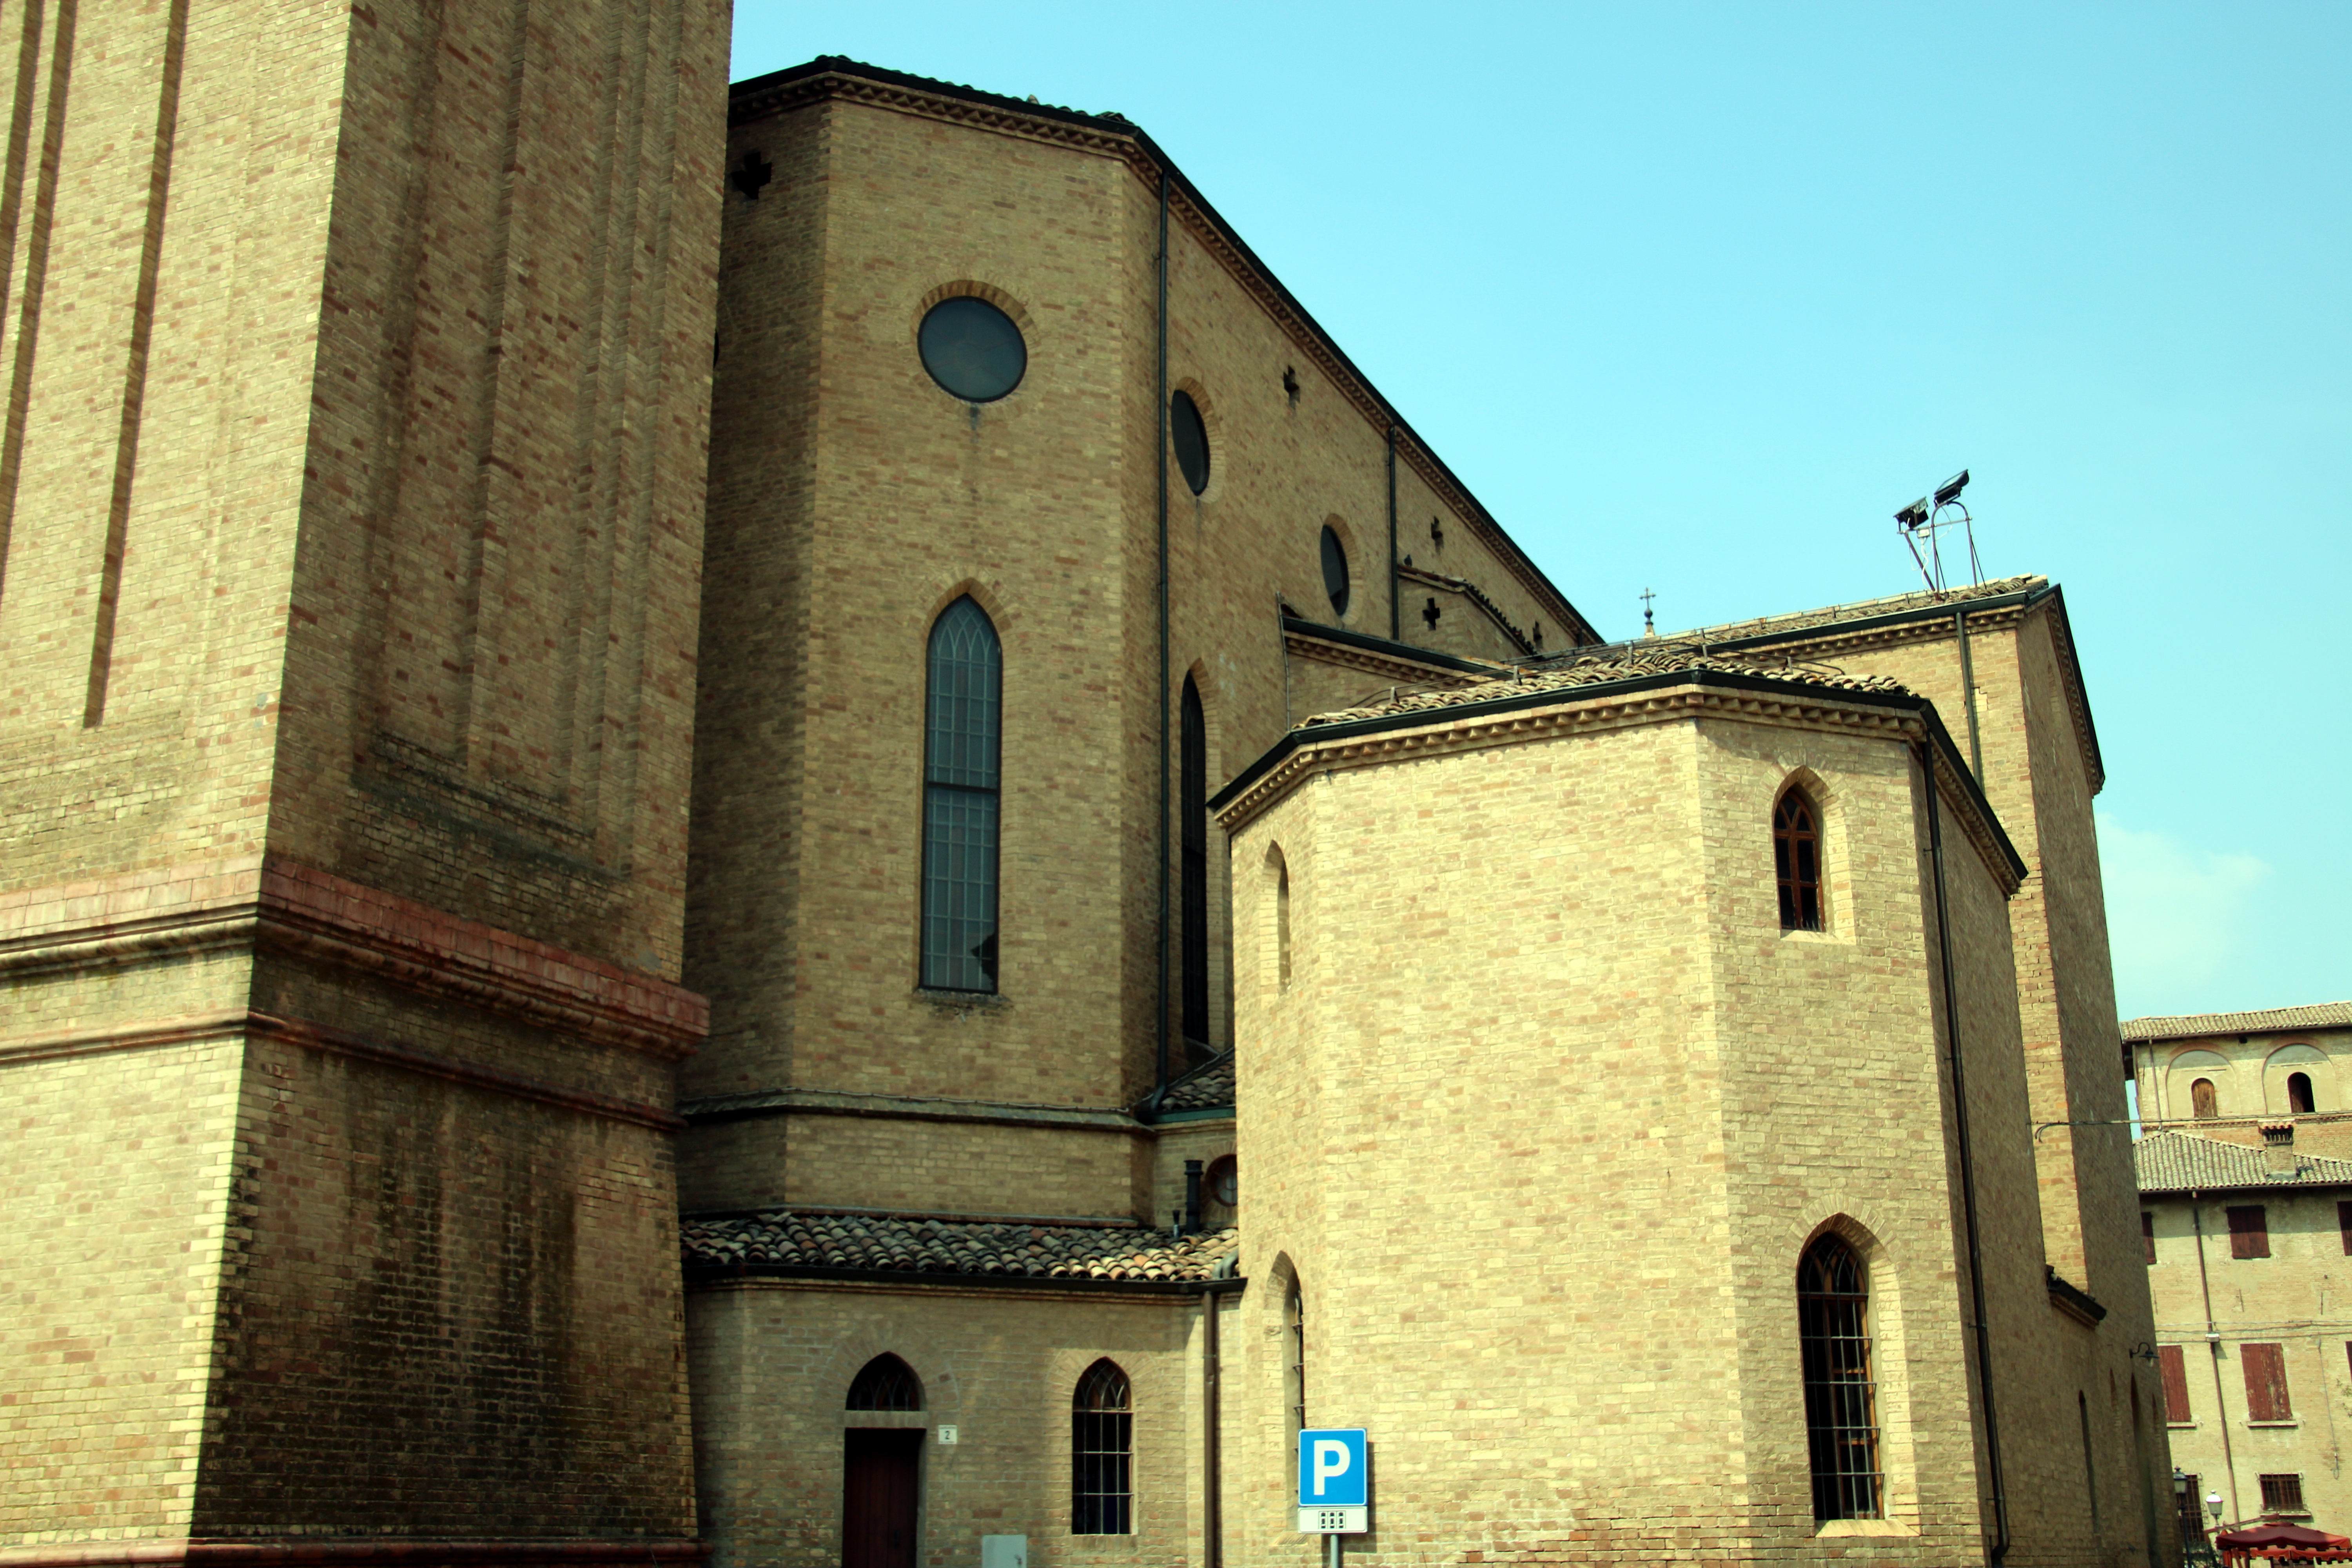 photo: https://upload.wikimedia.org/wikipedia/commons/0/05/Chiesa_dei_Santi_Senesio_e_Teopompo_%28Castelvetro_di_Modena%29_01.jpg